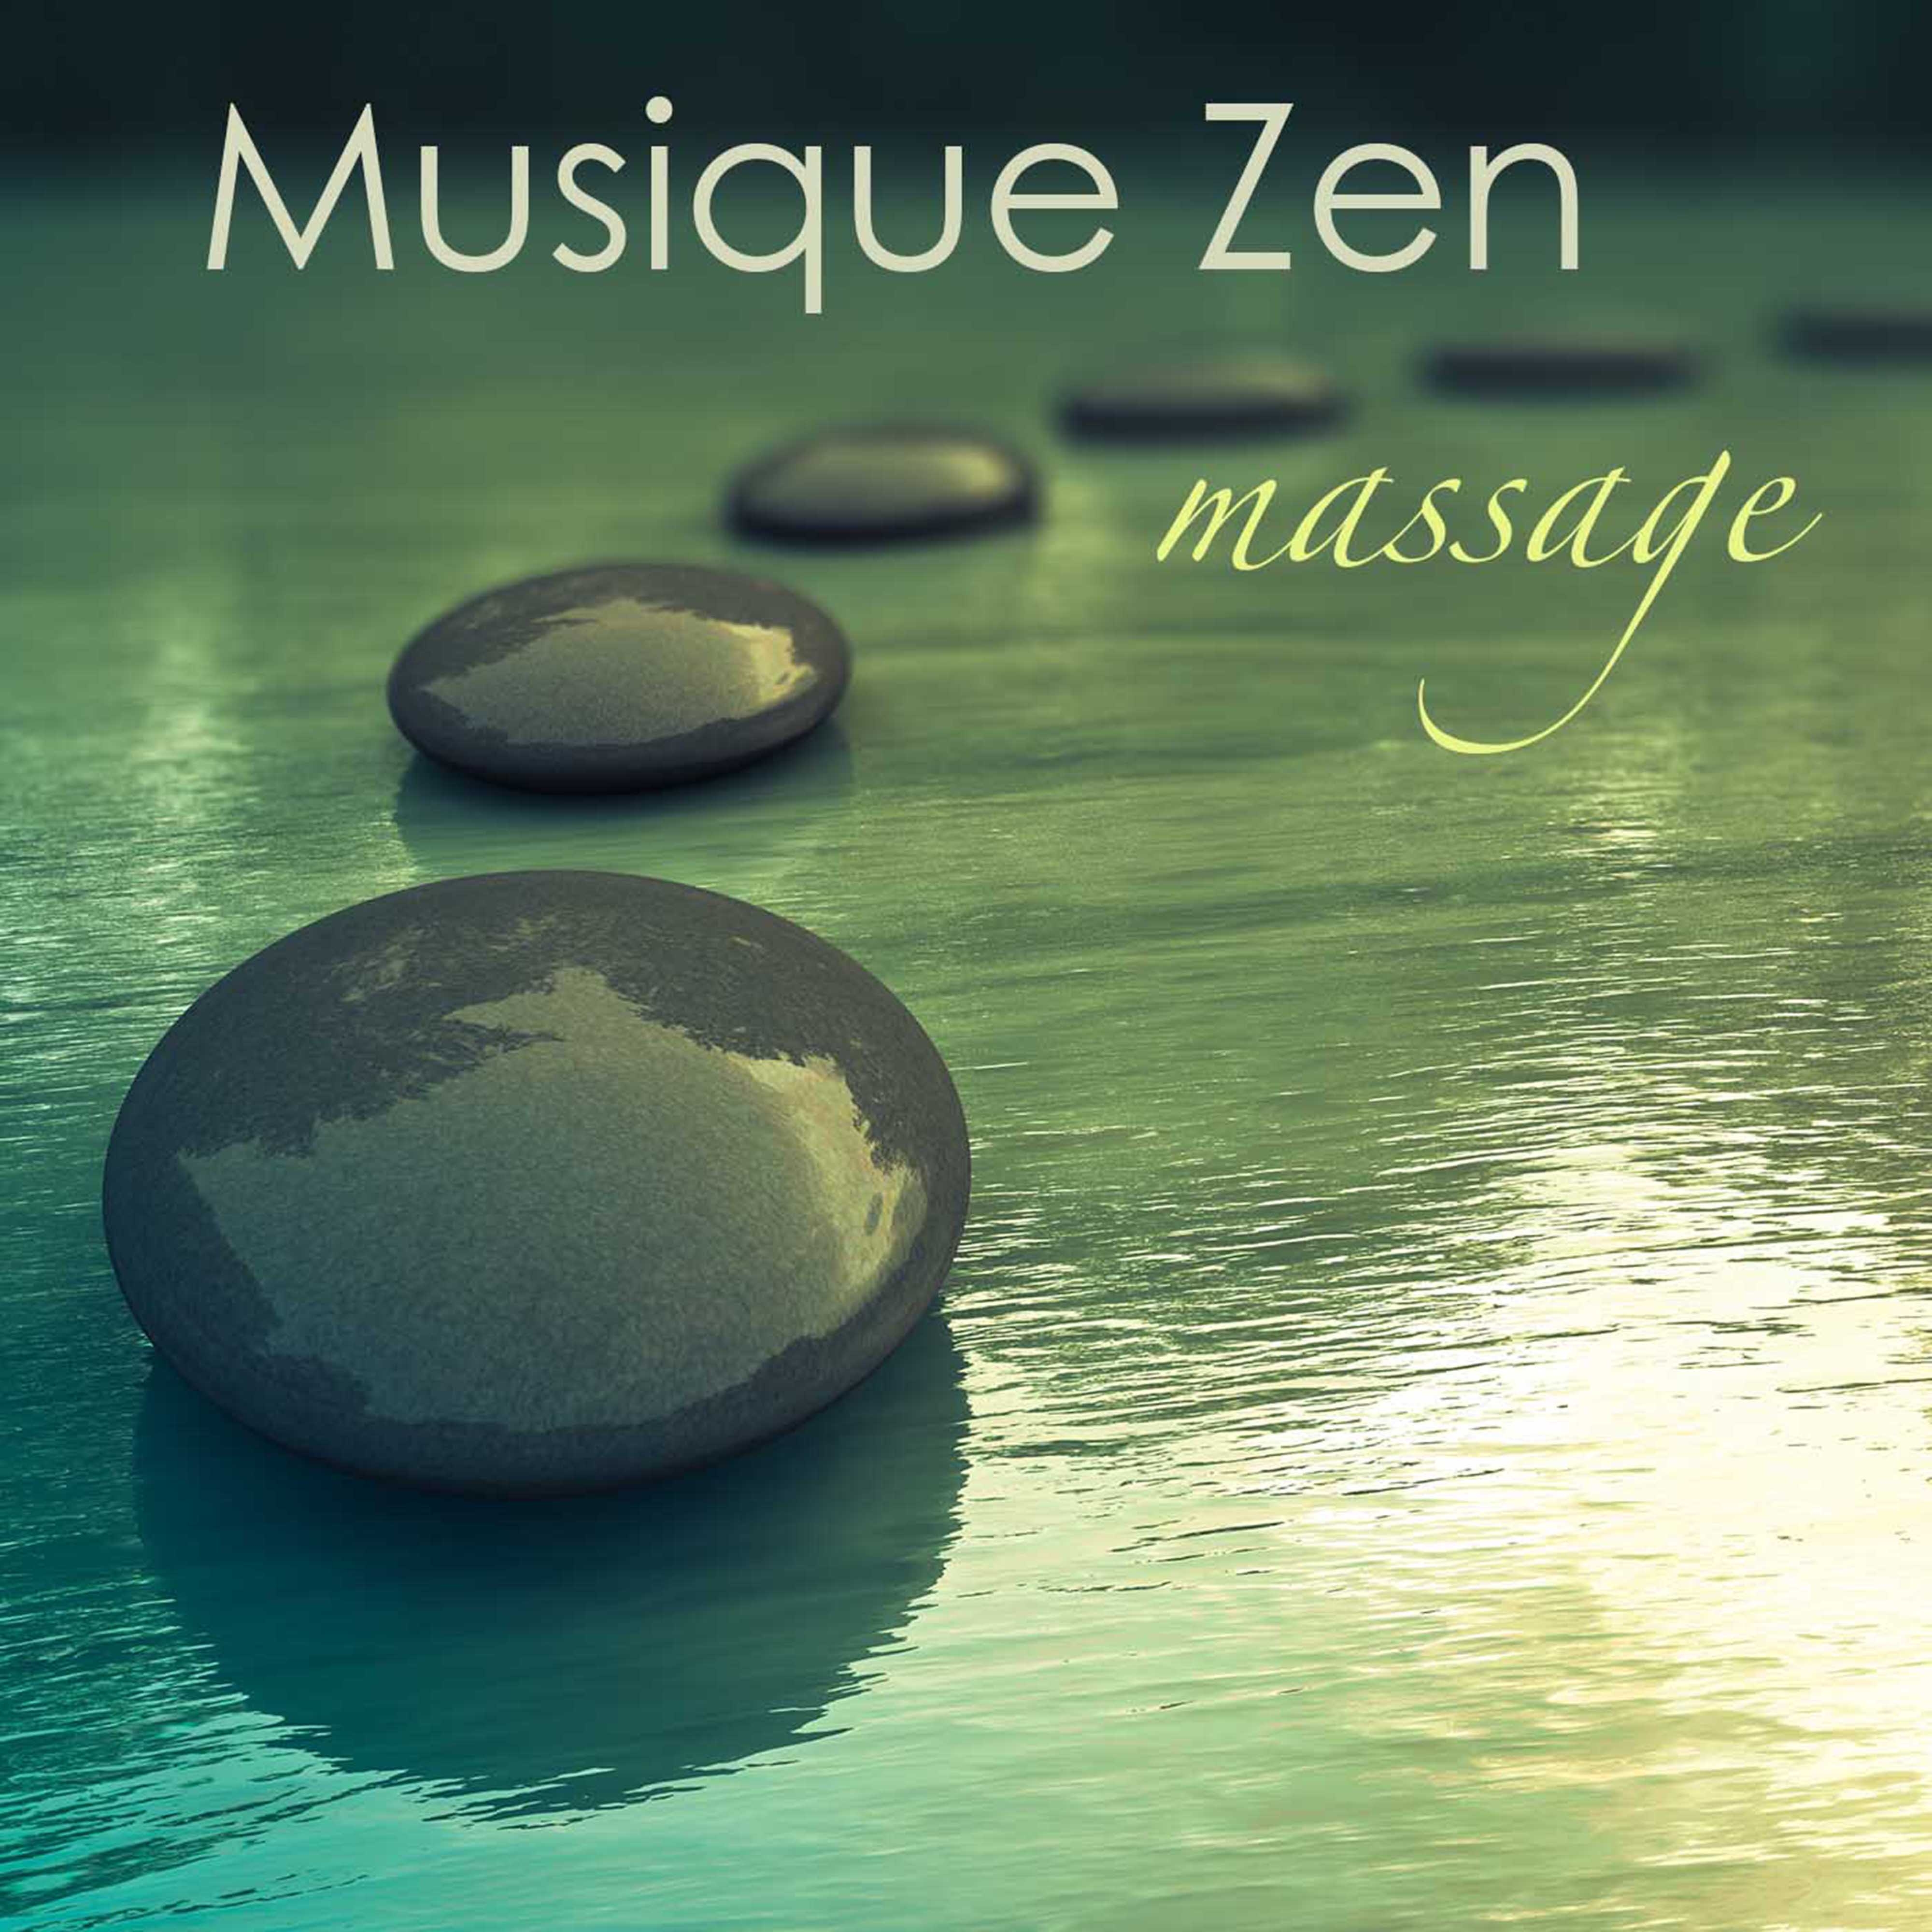 Musique zen massage: Musique de fond pour harmonie, se re nite et bien tre, musique relaxante pour le massage et relax